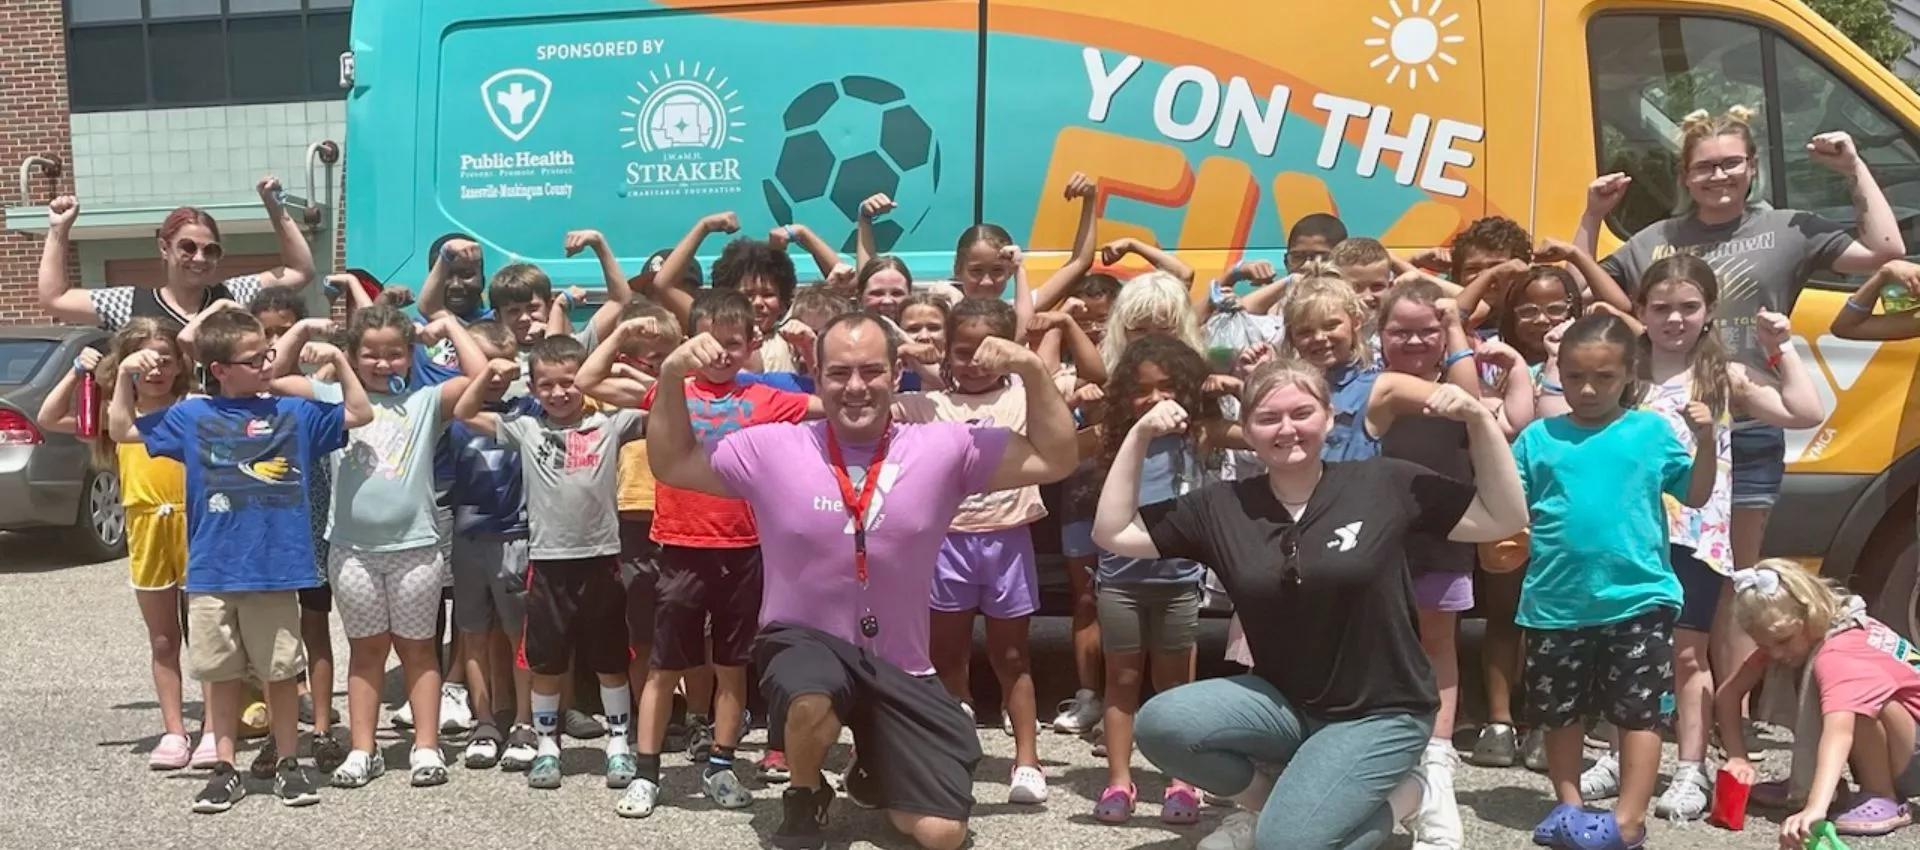 Y On the Fly - Muskingum - Kids and volunteers at the van